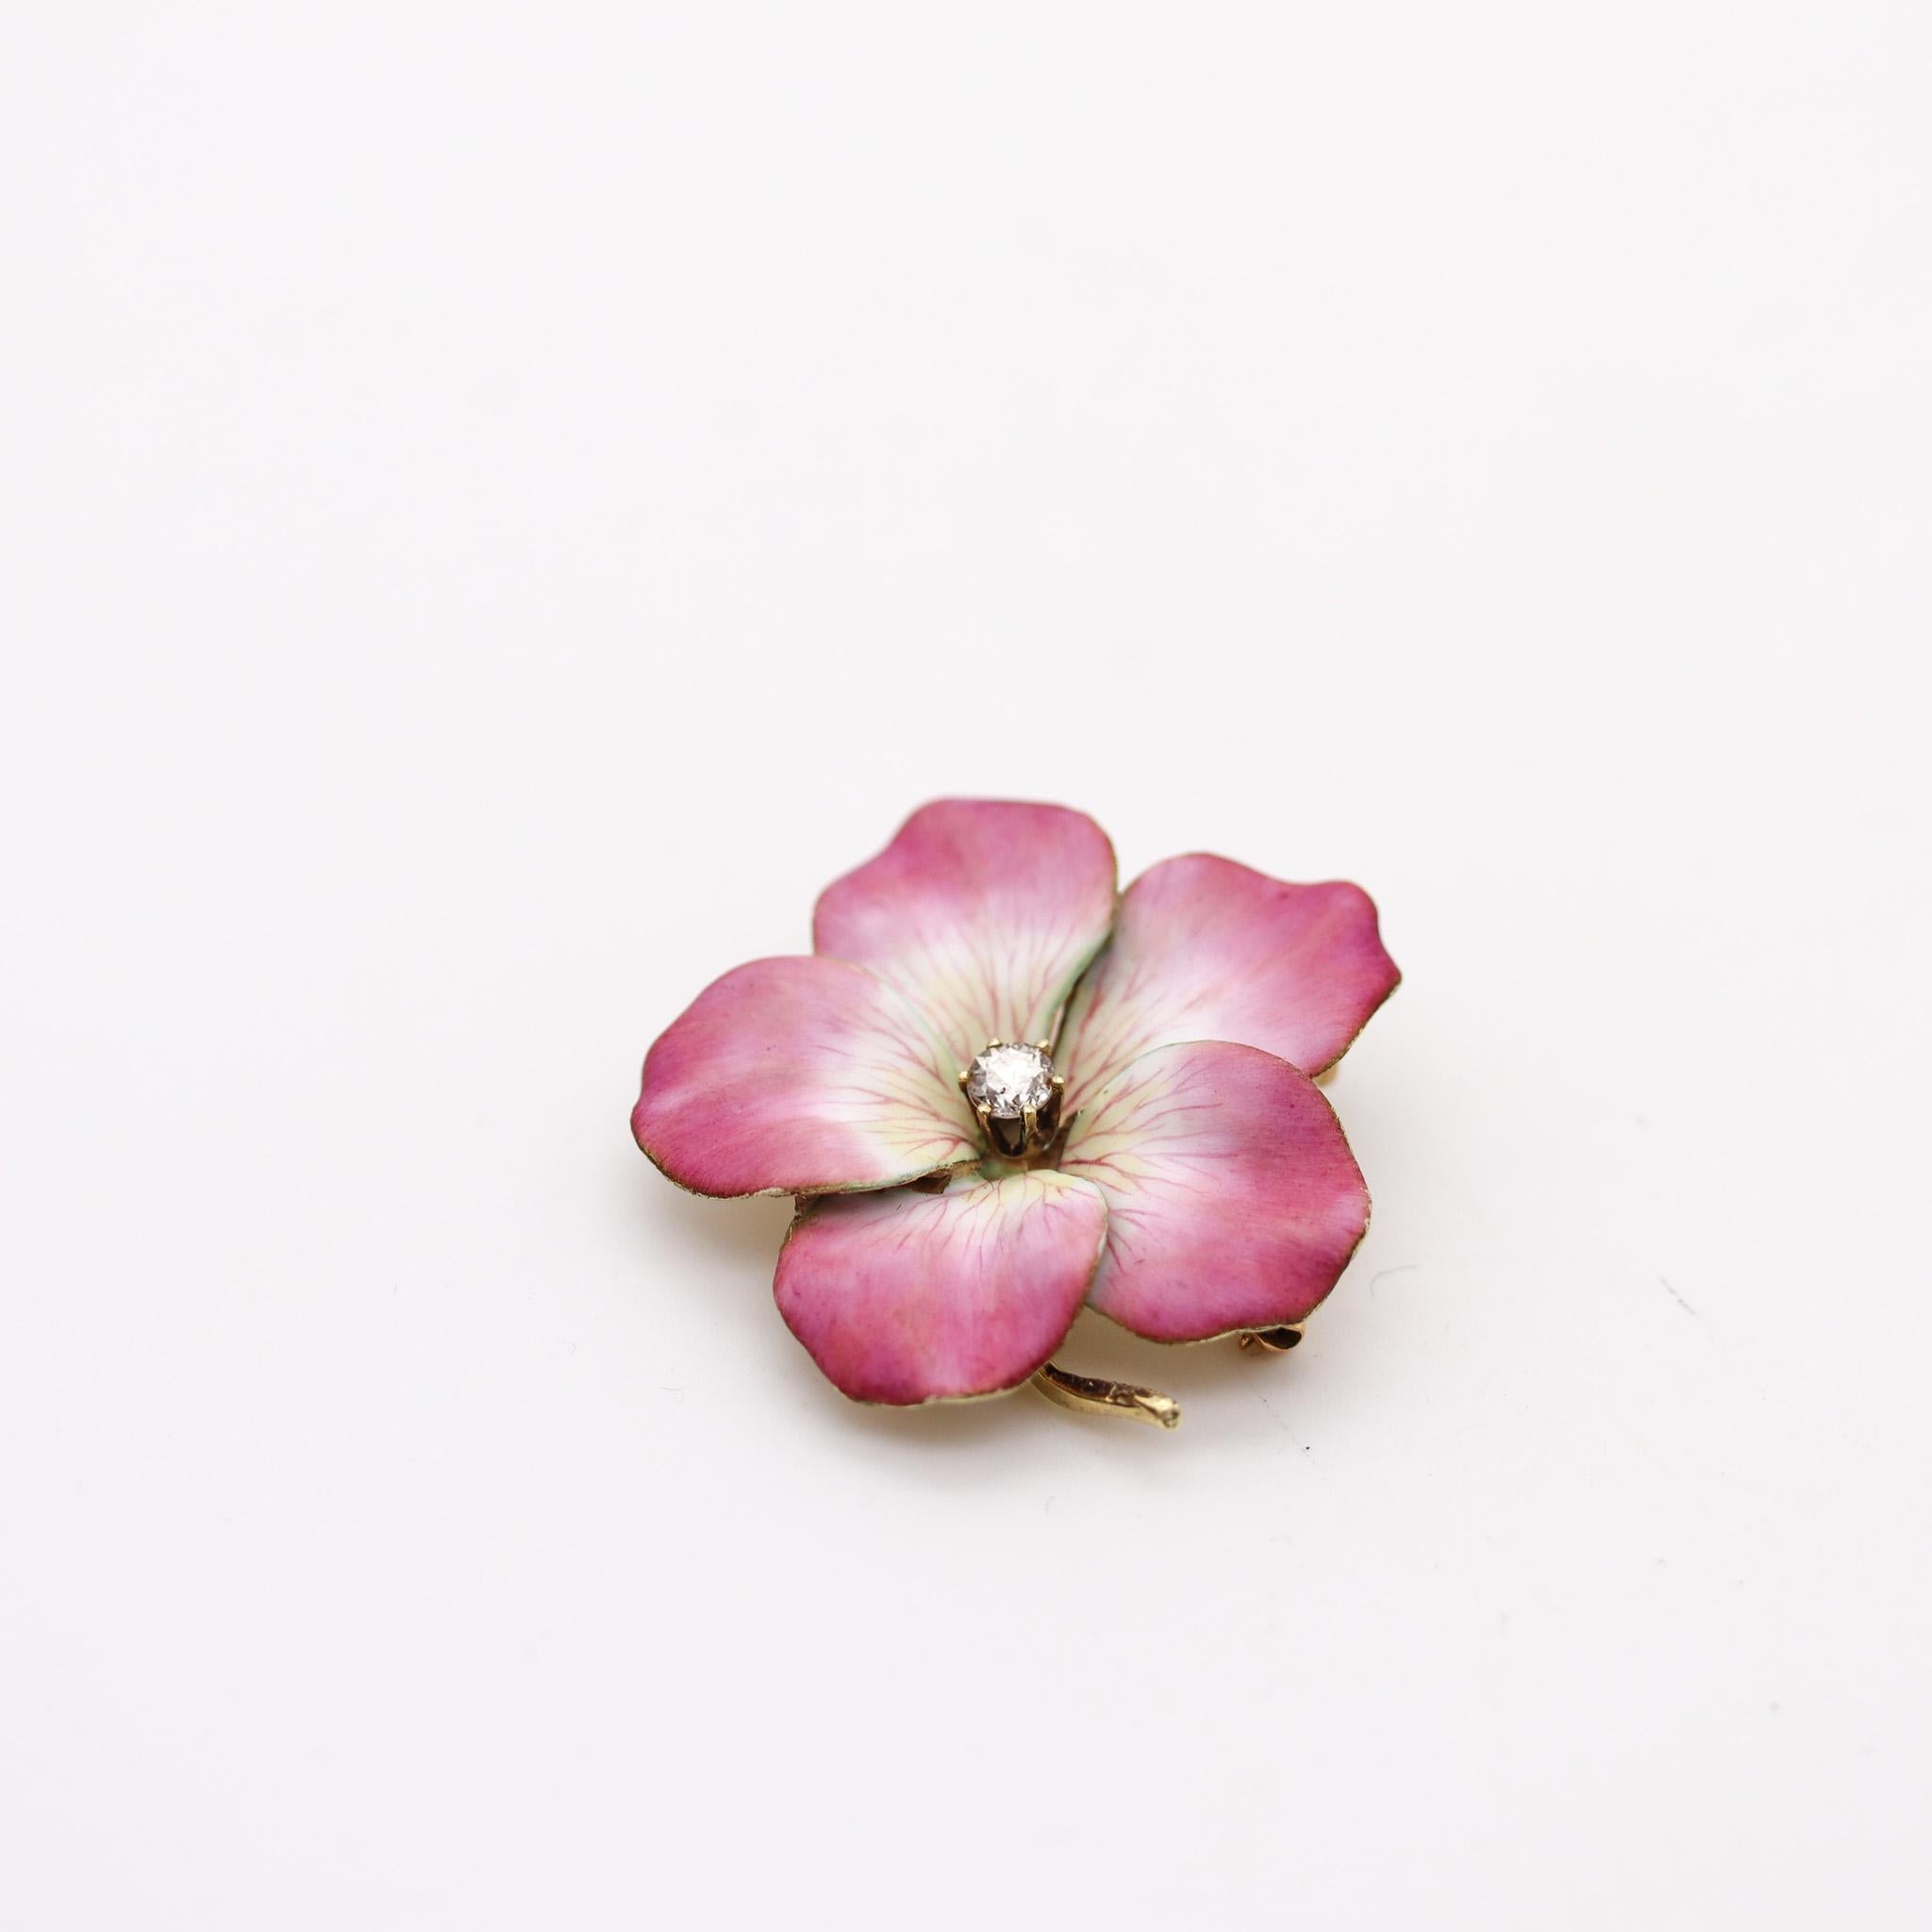 Edwardian emailliert Cabrio Blumenbrosche.

Schöne dreidimensionale fünfblättrige Blume, die in Amerika während der edwardianischen und der Jugendstilzeit zwischen 1900 und 1910 entstand. Diese große Cabrio-Anhänger-Brosche wurde sorgfältig aus